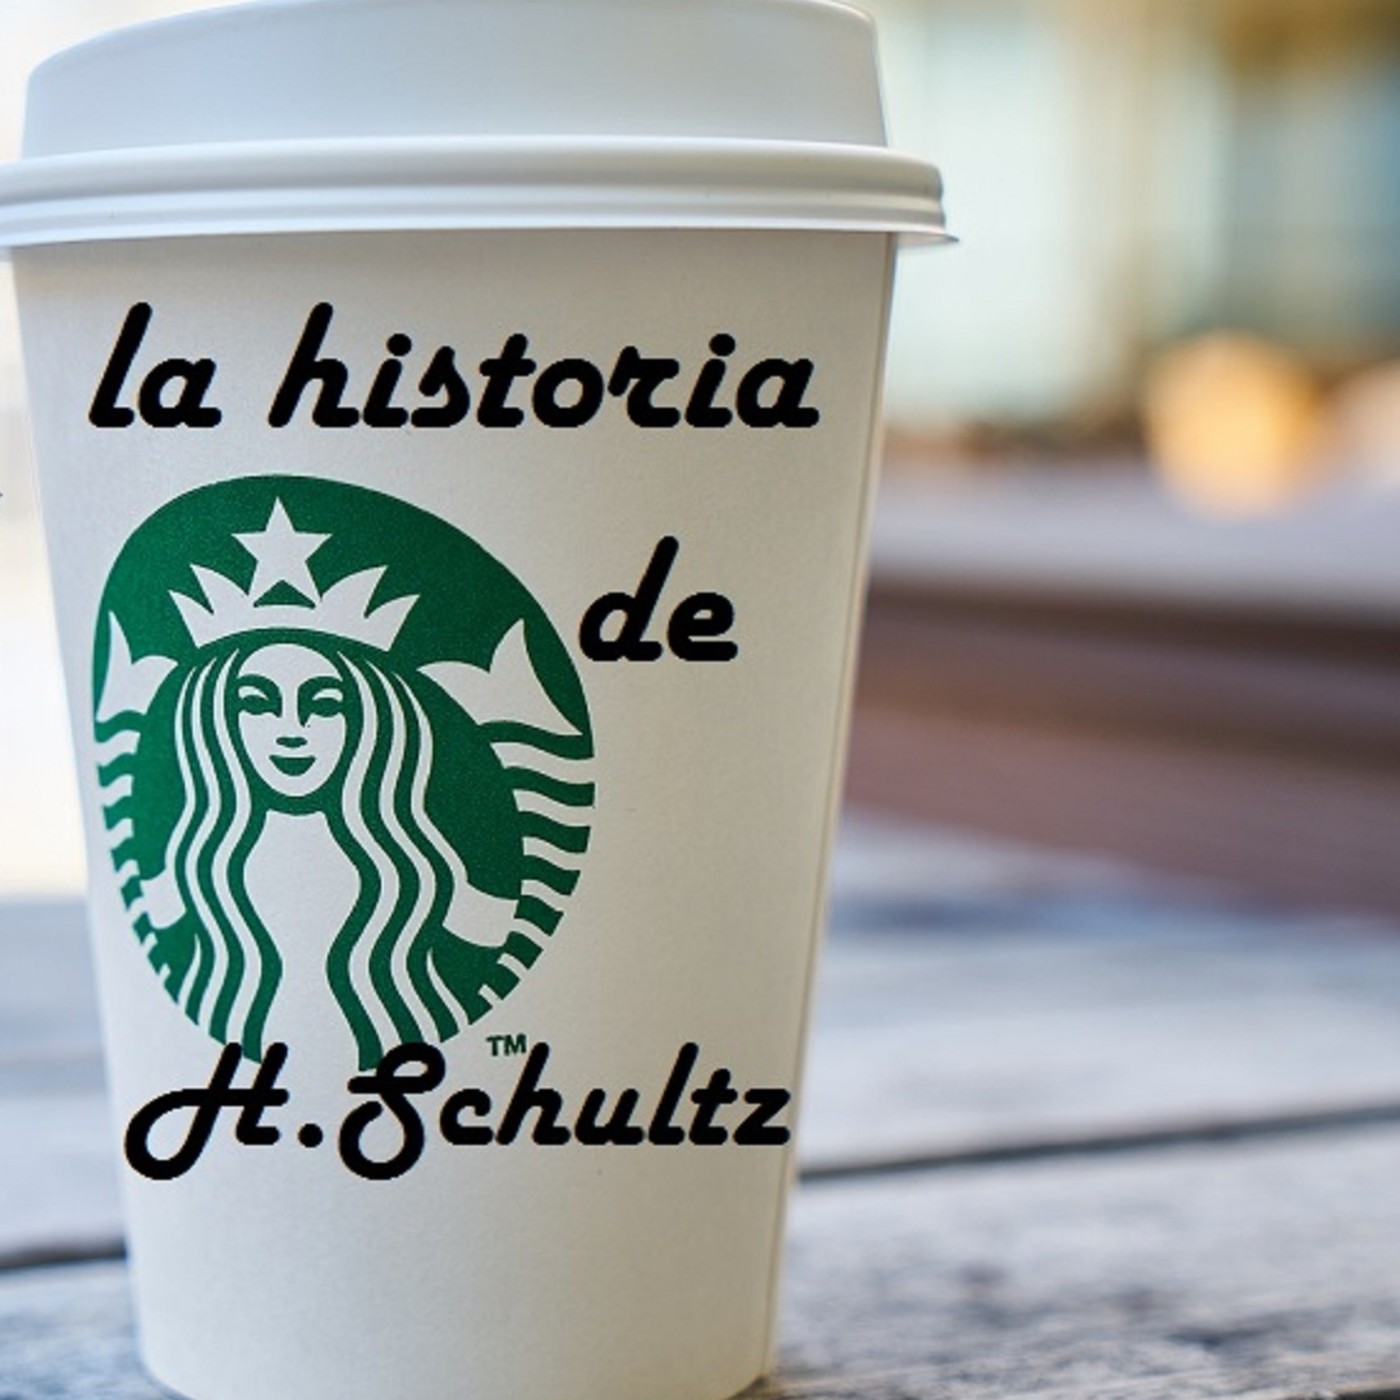 Episodio 1: La historia de Howard Schultz el genio detras de Starbucks